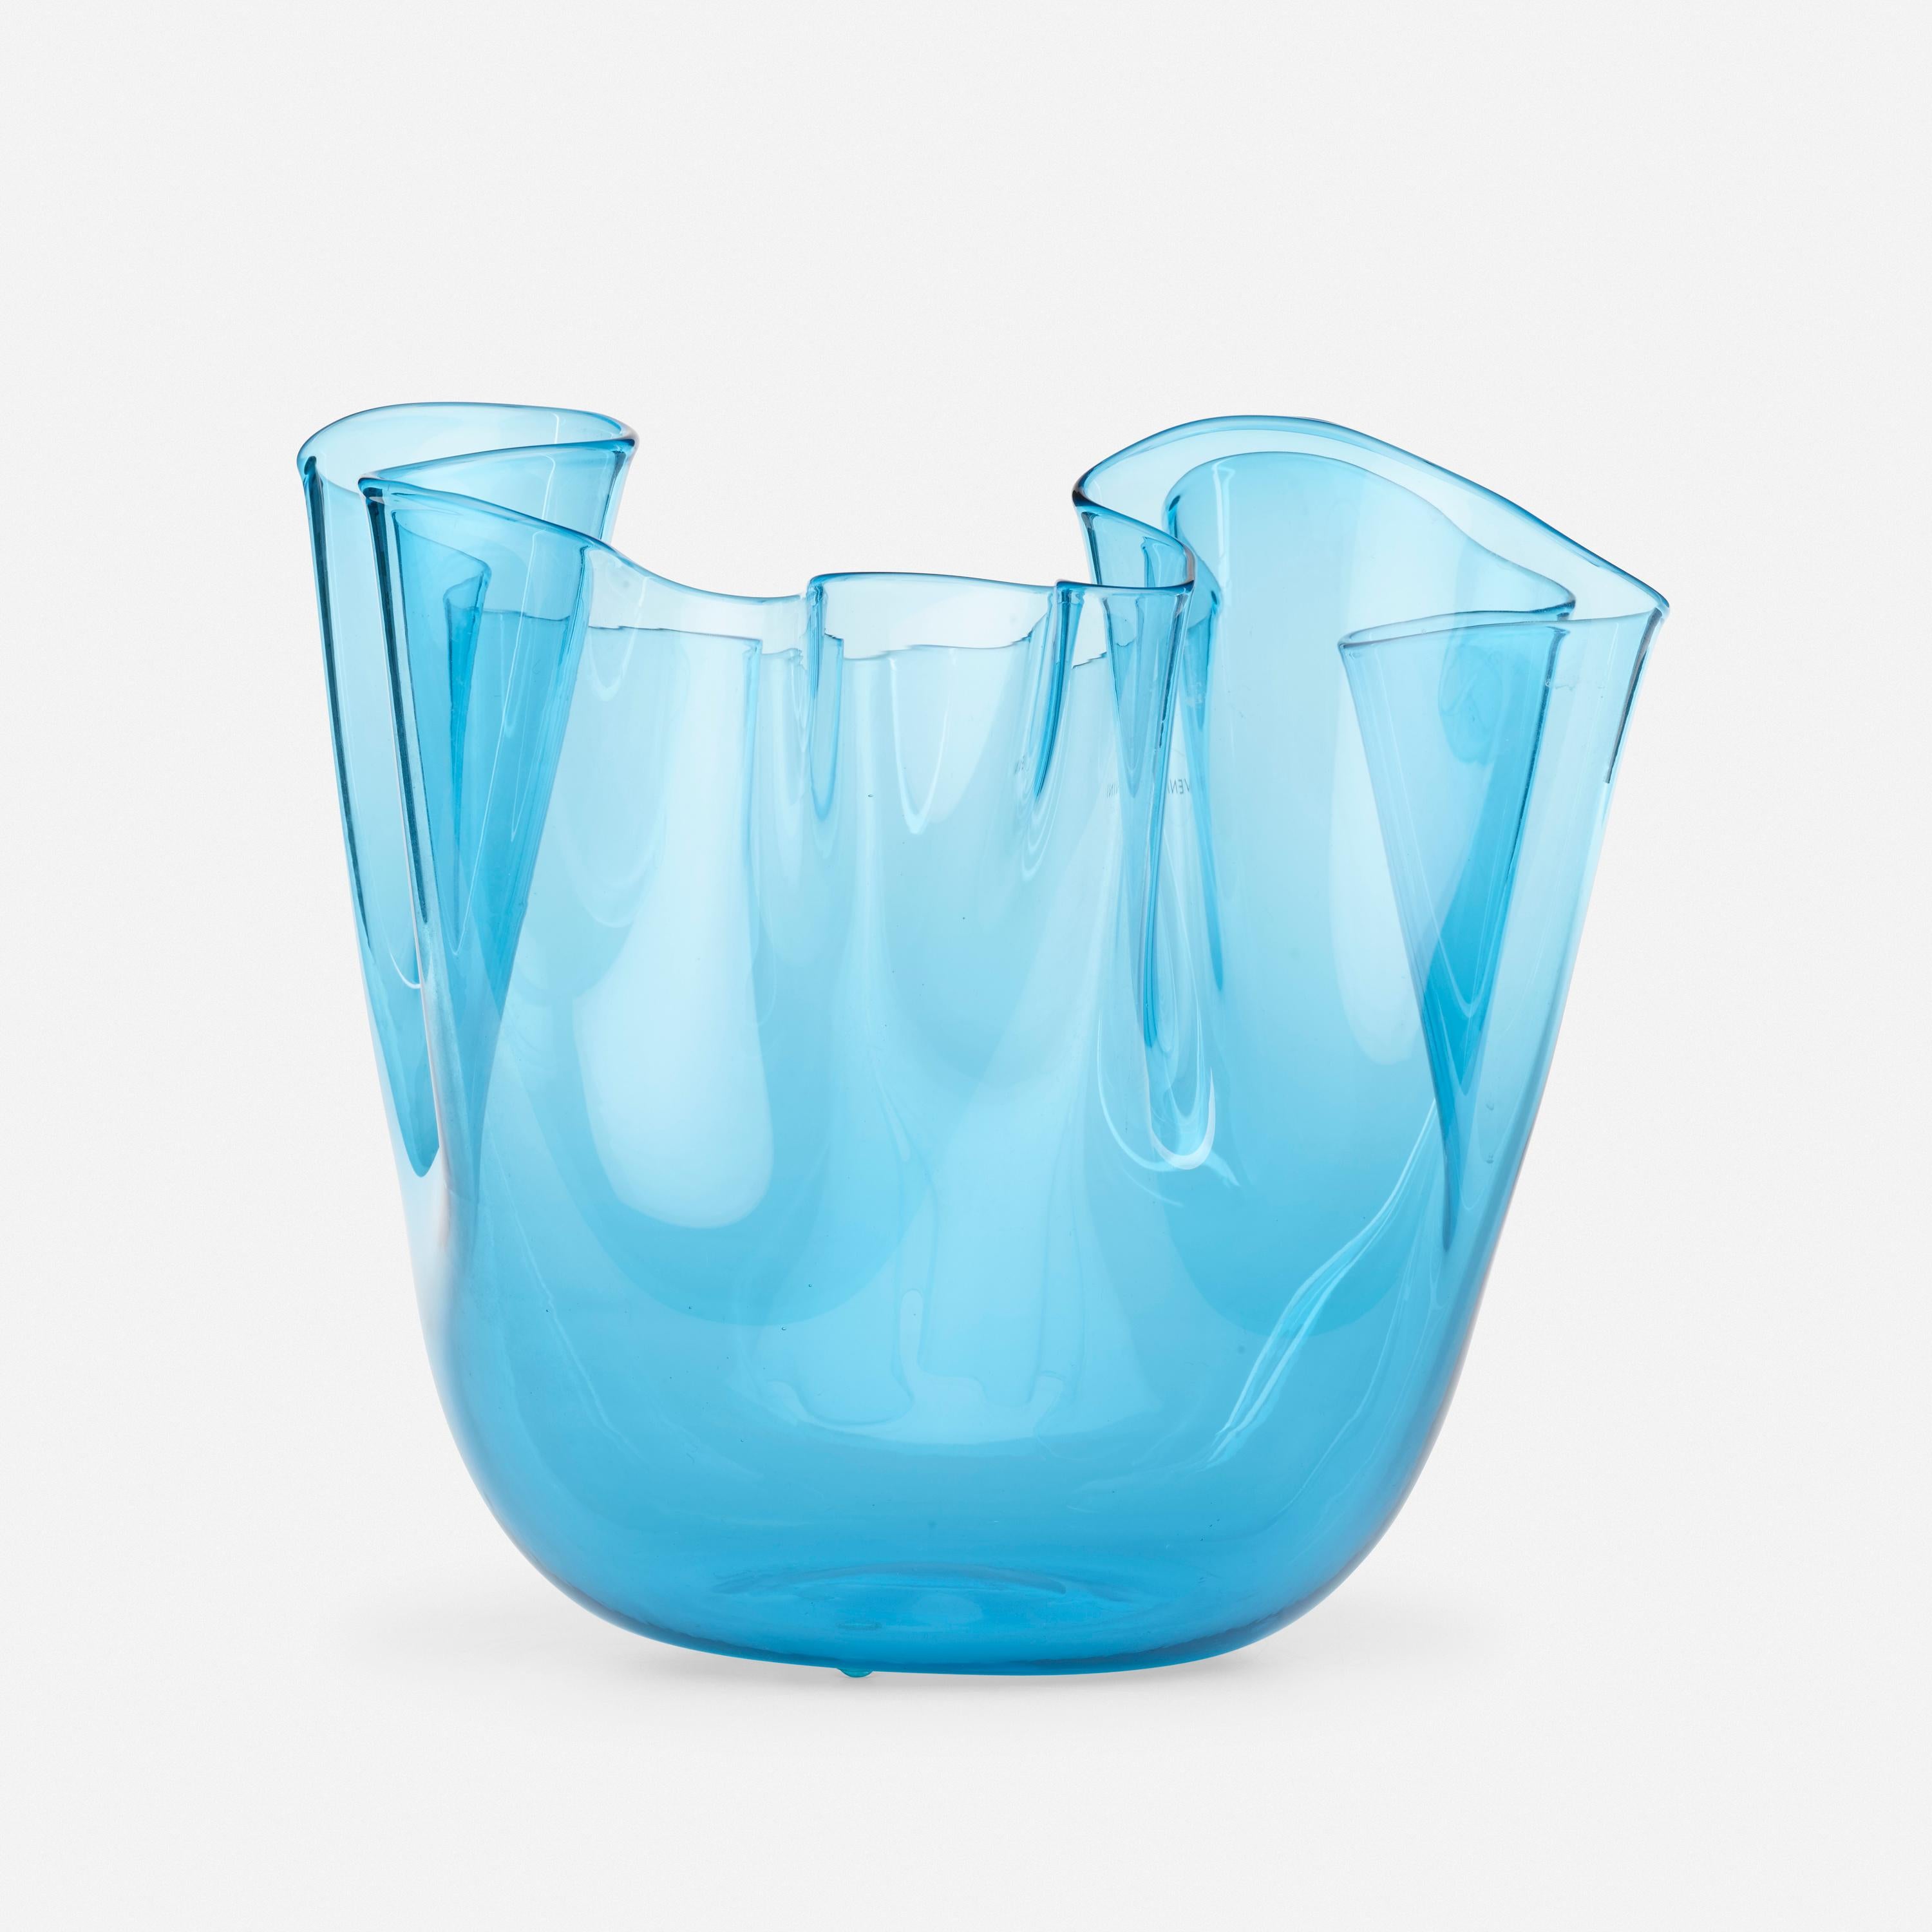 Venini clear blue glass fazzoletto vase. Signed etched Venini 2006.